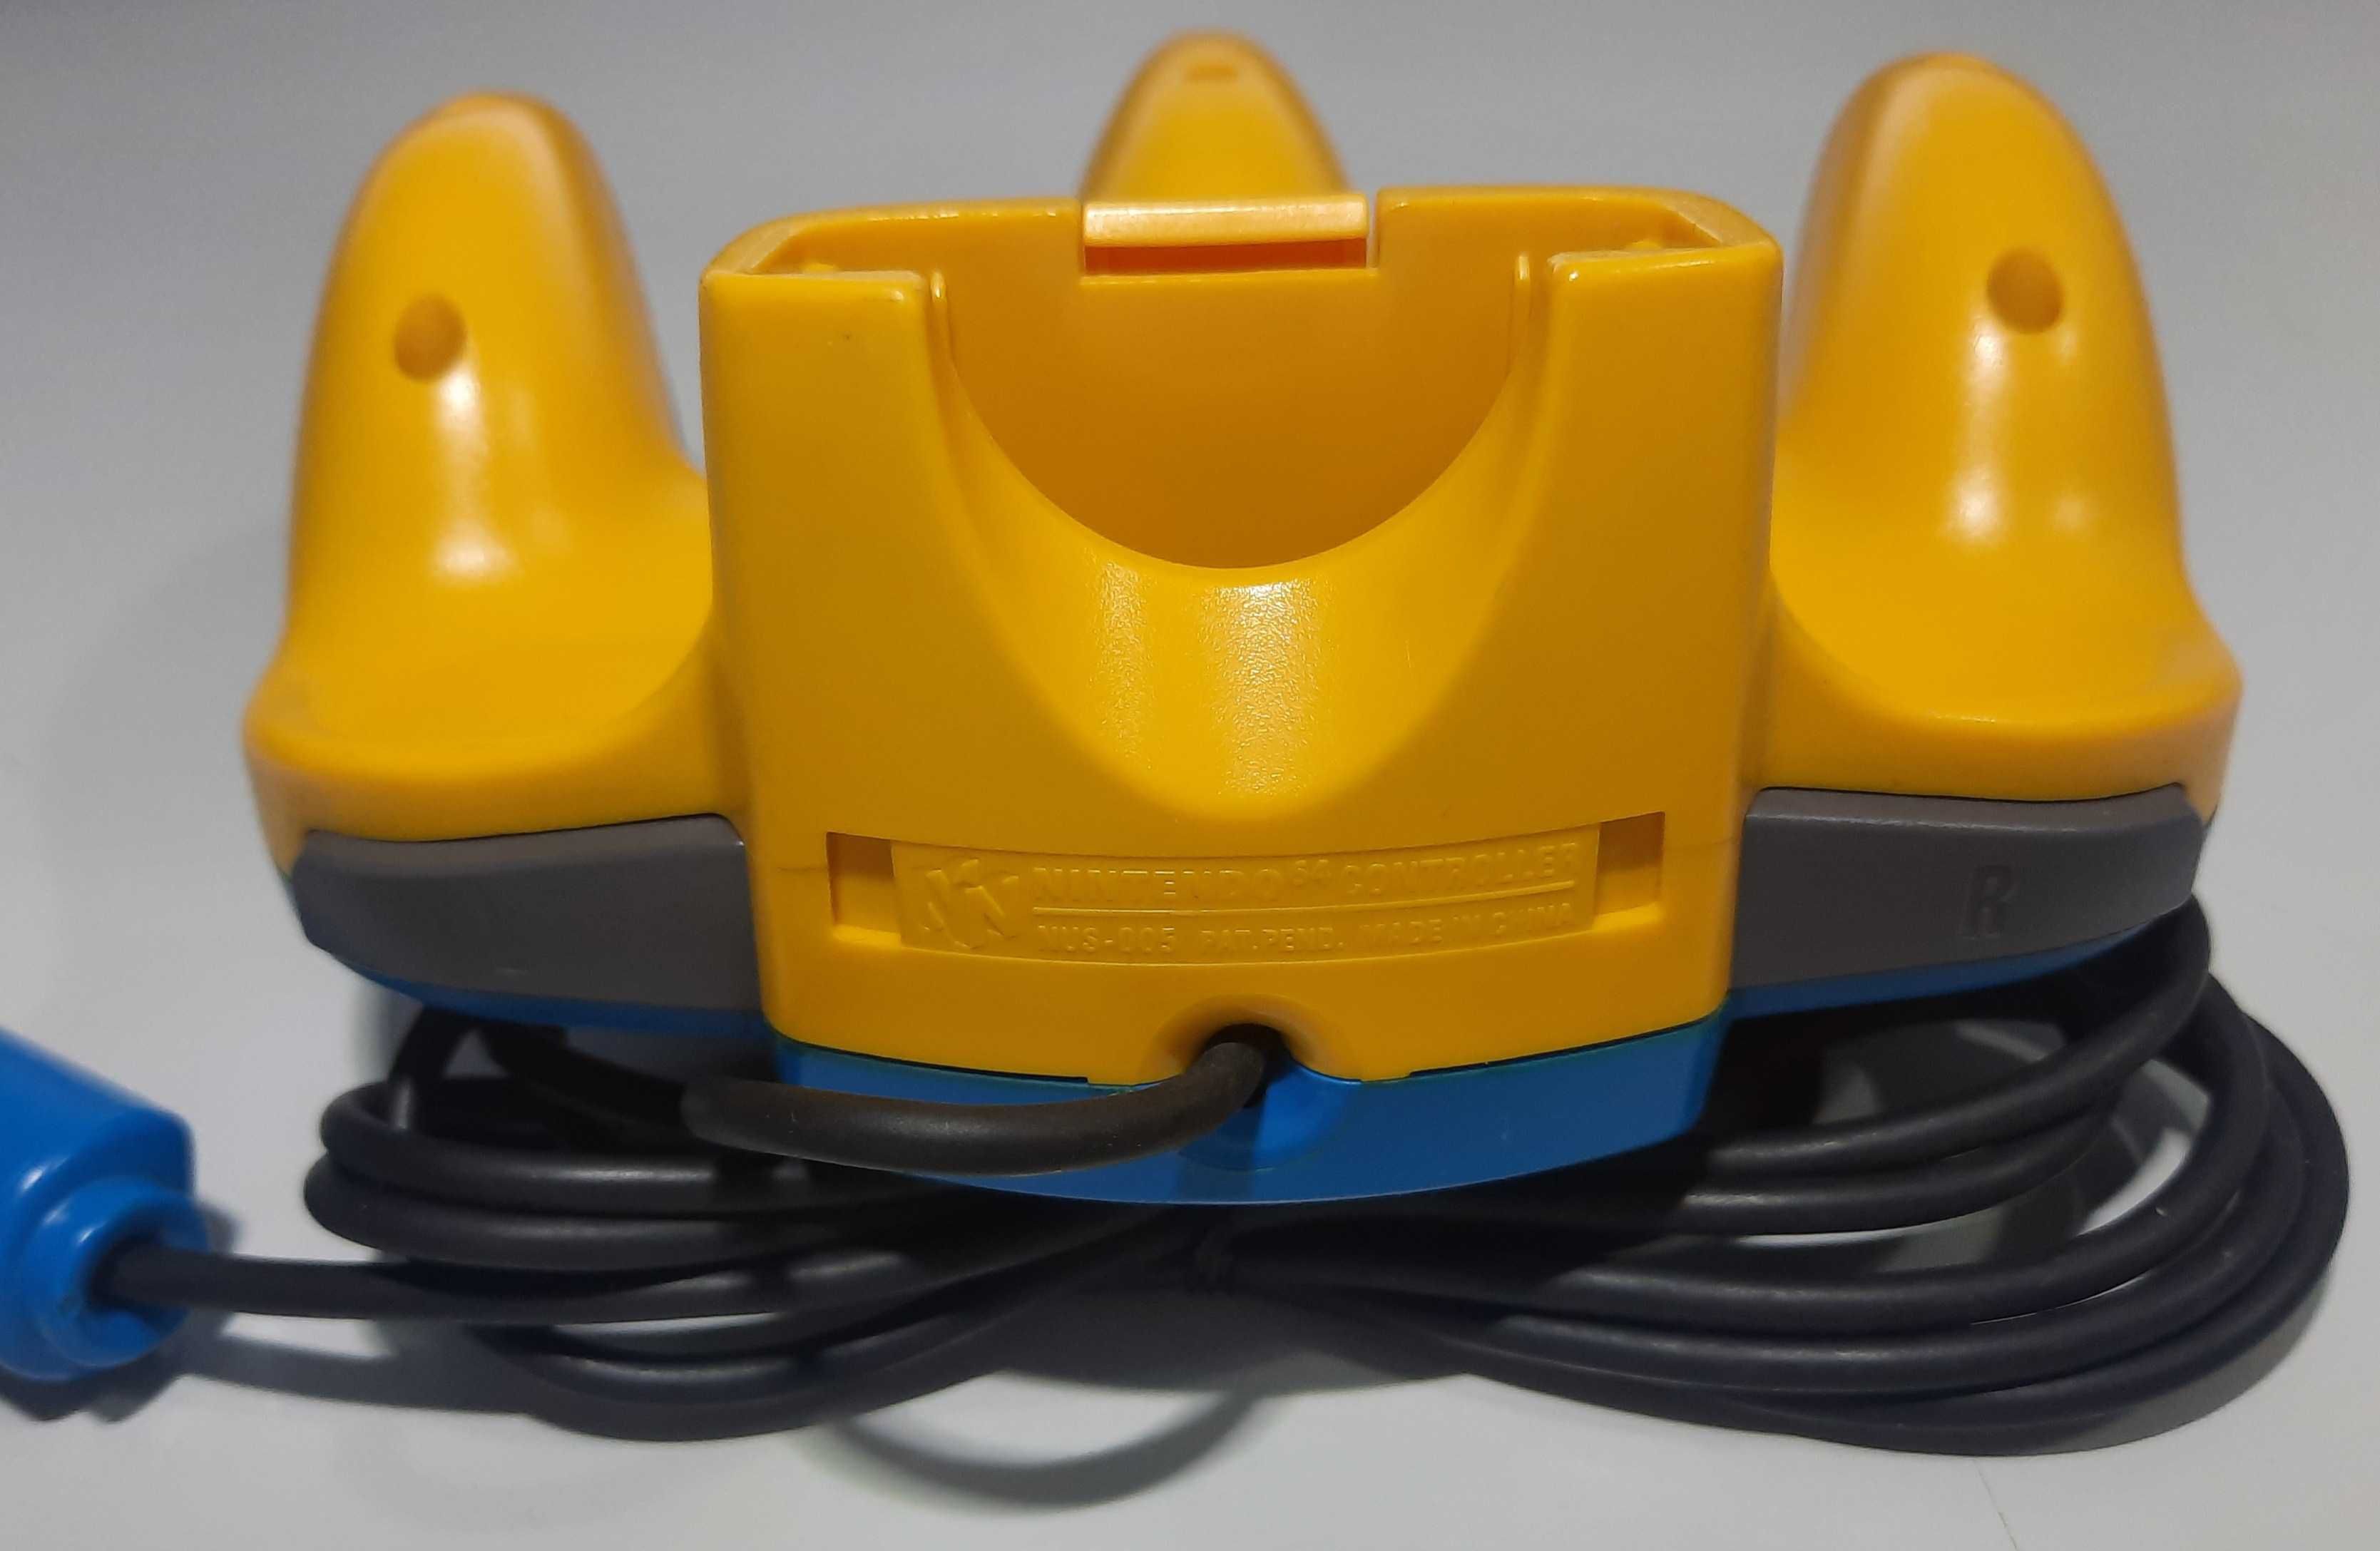 Pad Nintendo 64 / Pikachu Blue and Yellow (NUS-005)